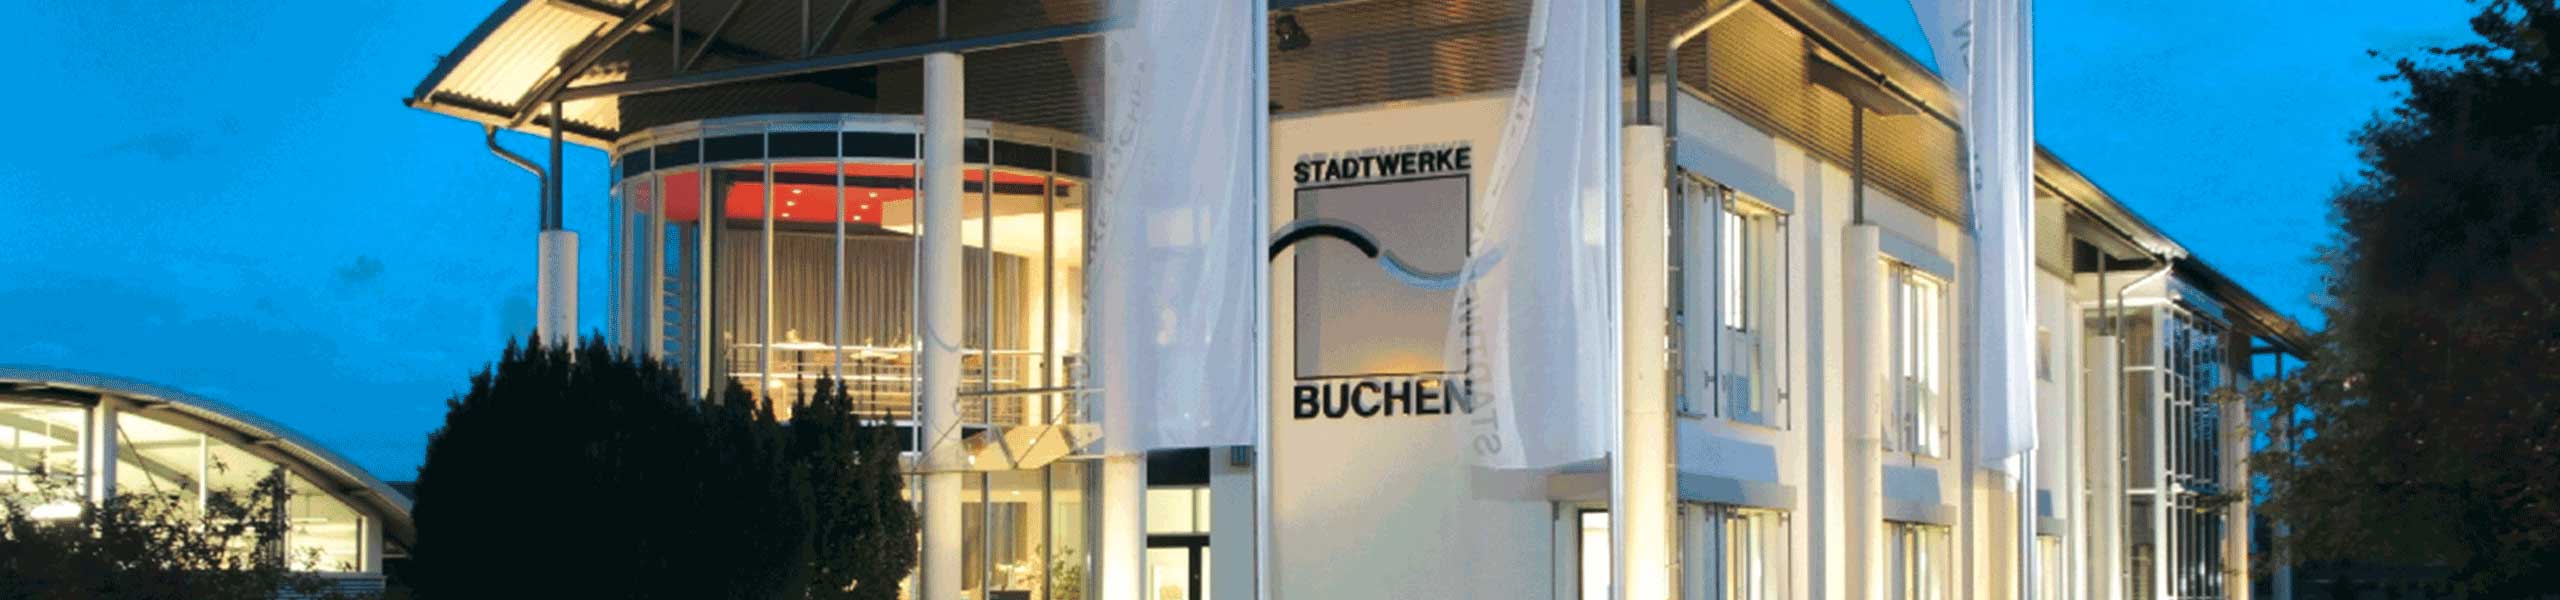 Stadtwerke Buchen GmbH & Co KG - Ladestation anmelden